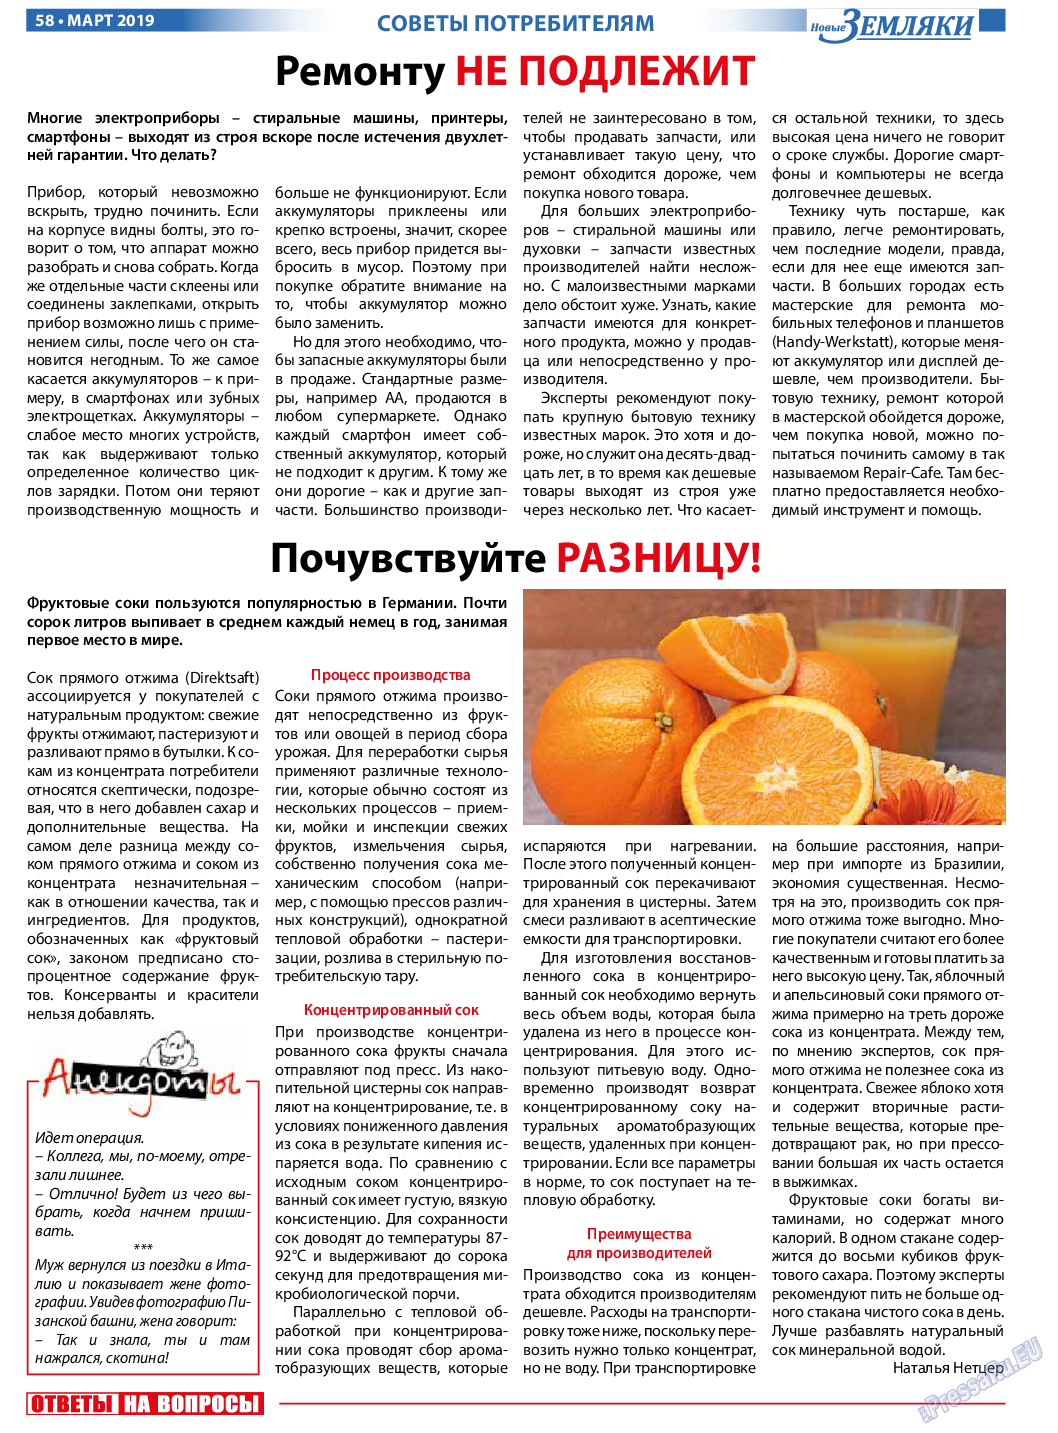 Новые Земляки, газета. 2019 №3 стр.58